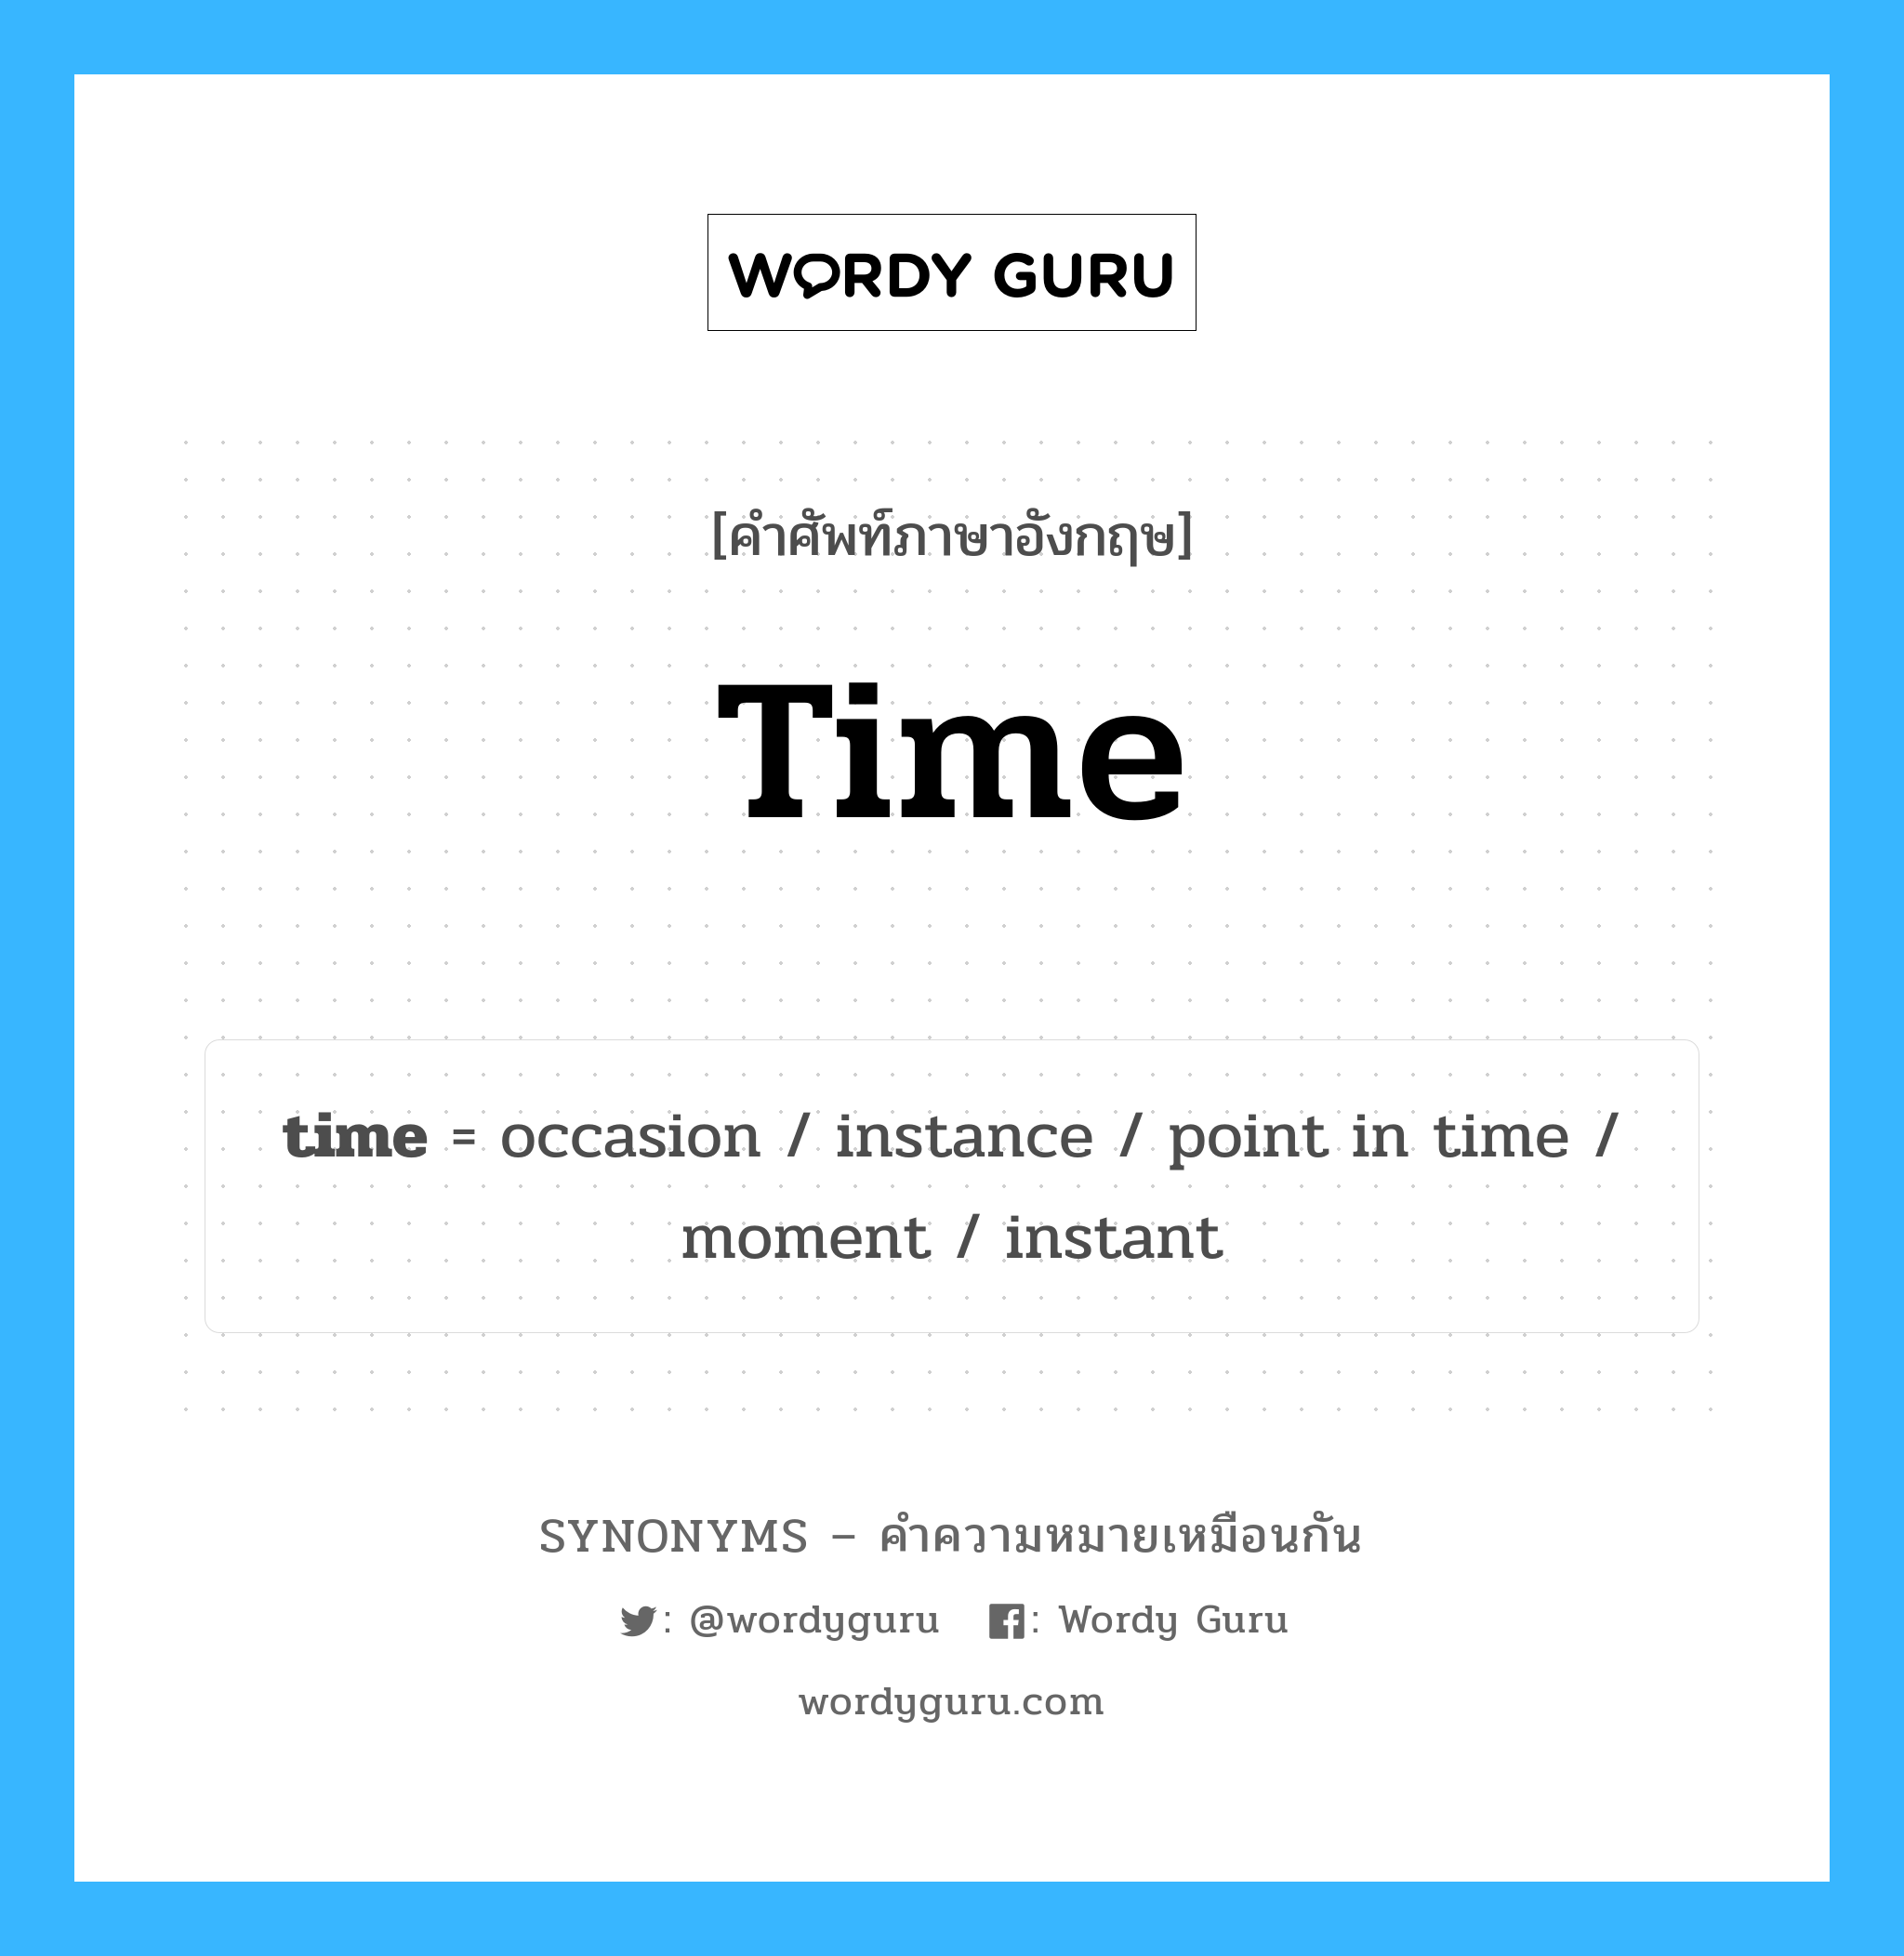 moment เป็นหนึ่งใน time และมีคำอื่น ๆ อีกดังนี้, คำศัพท์ภาษาอังกฤษ moment ความหมายคล้ายกันกับ time แปลว่า ช่วงเวลา หมวด time